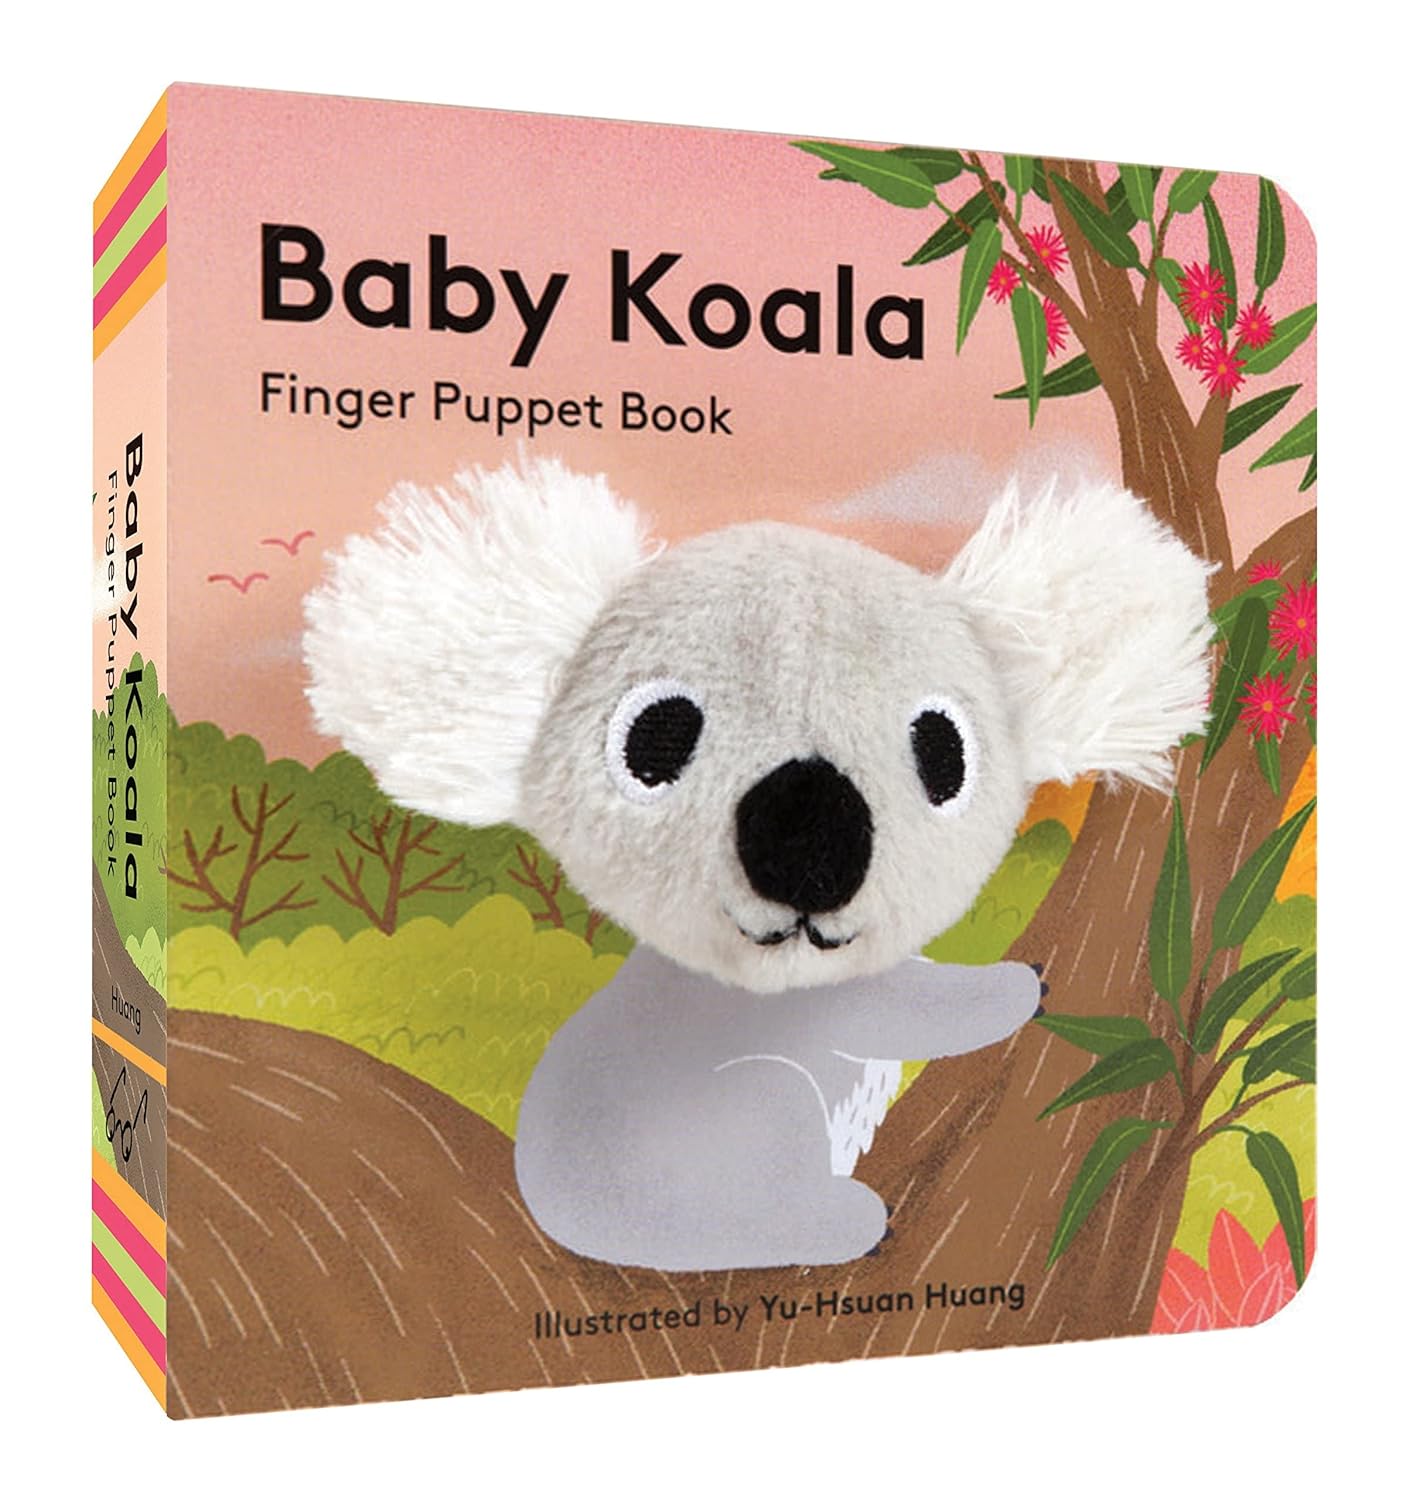 FINGER PUPPET BOOK - BABY KOALA